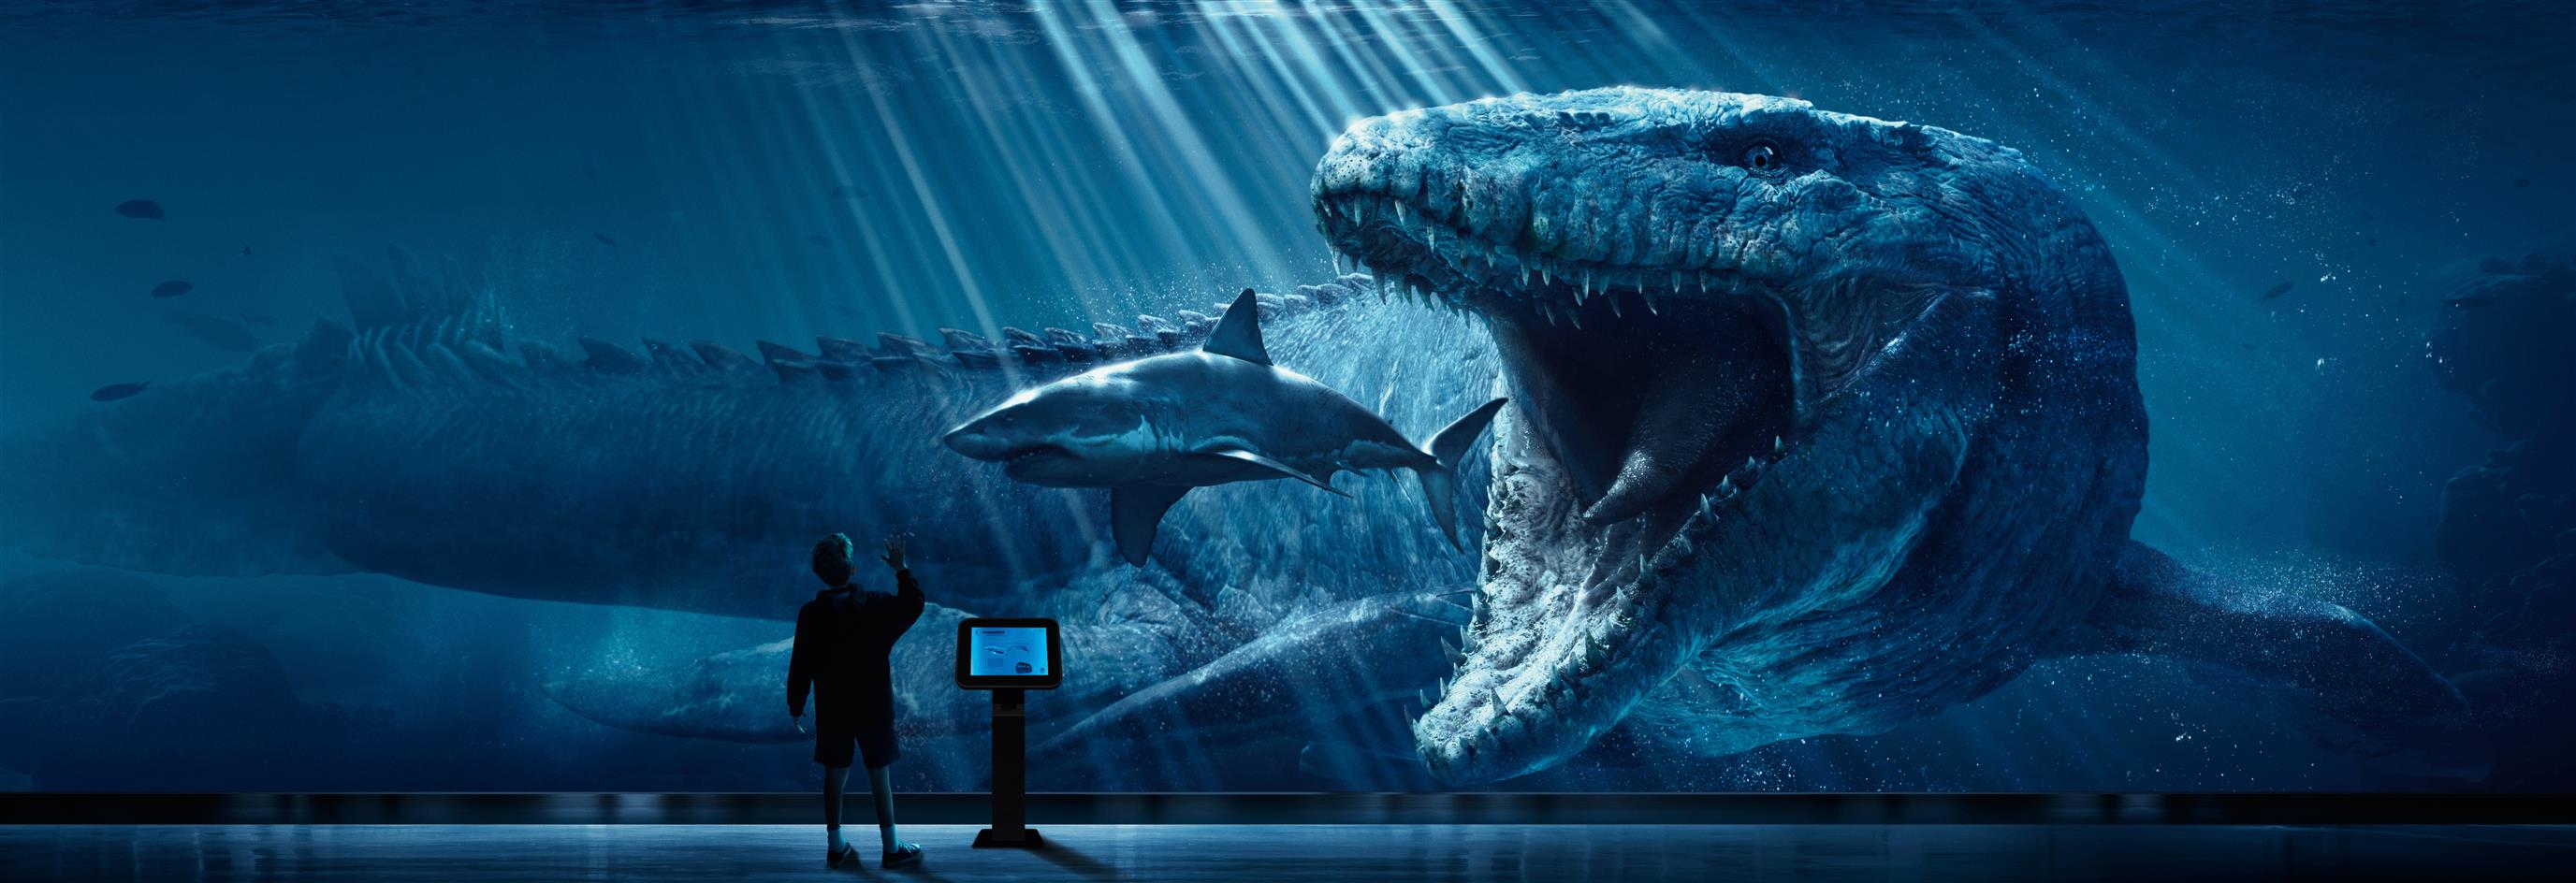 Megalodon wallpaper, digital art, Jurassic World, shark, dinosaurs, HD wallpaper